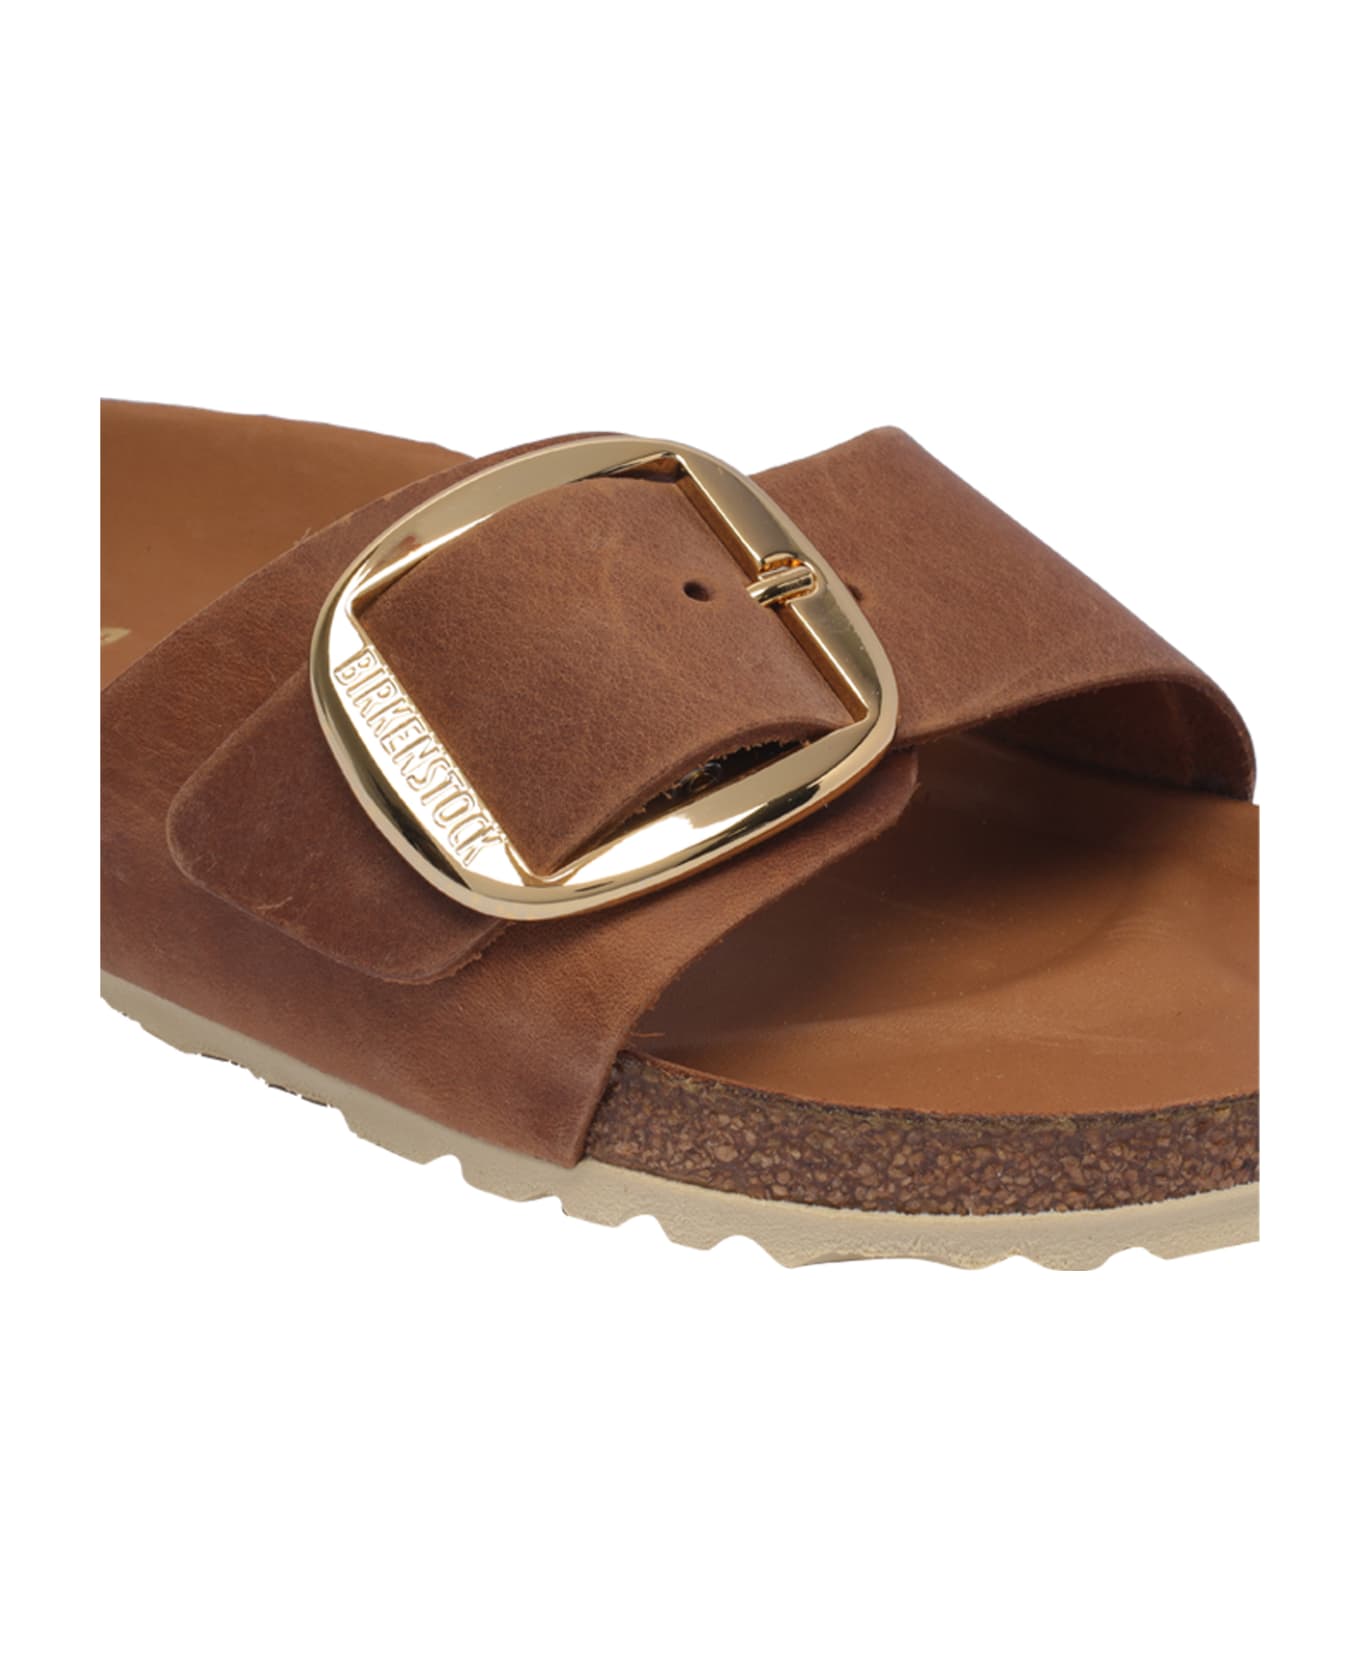 Birkenstock Madrid Sandals - Brown